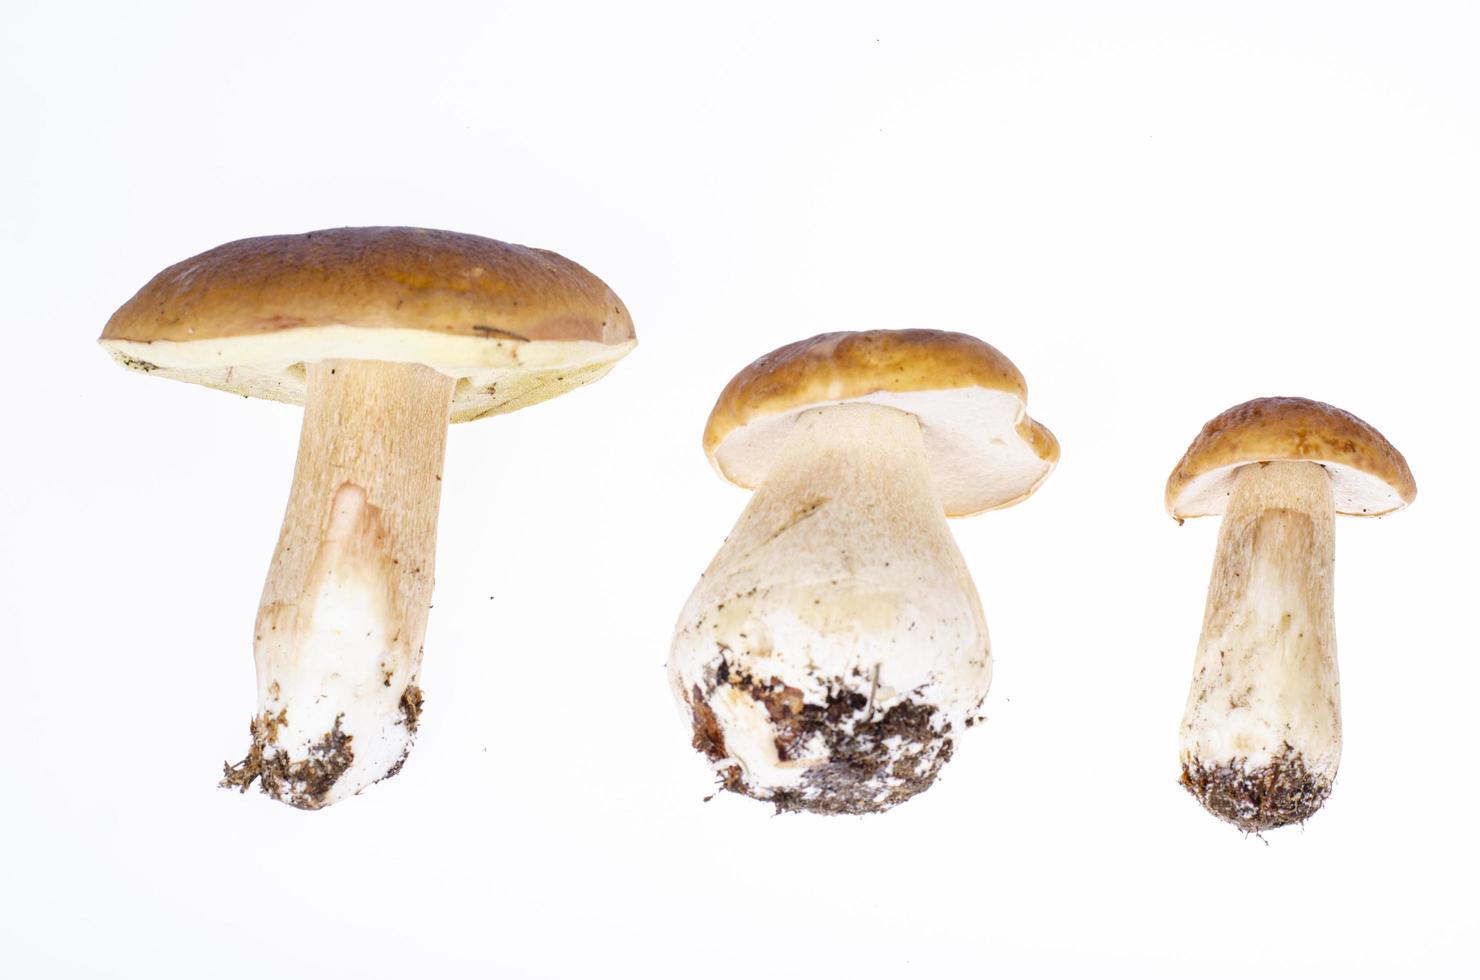 funghi porcini foresta commestibili isolati su sfondo bianco. foto in studio.